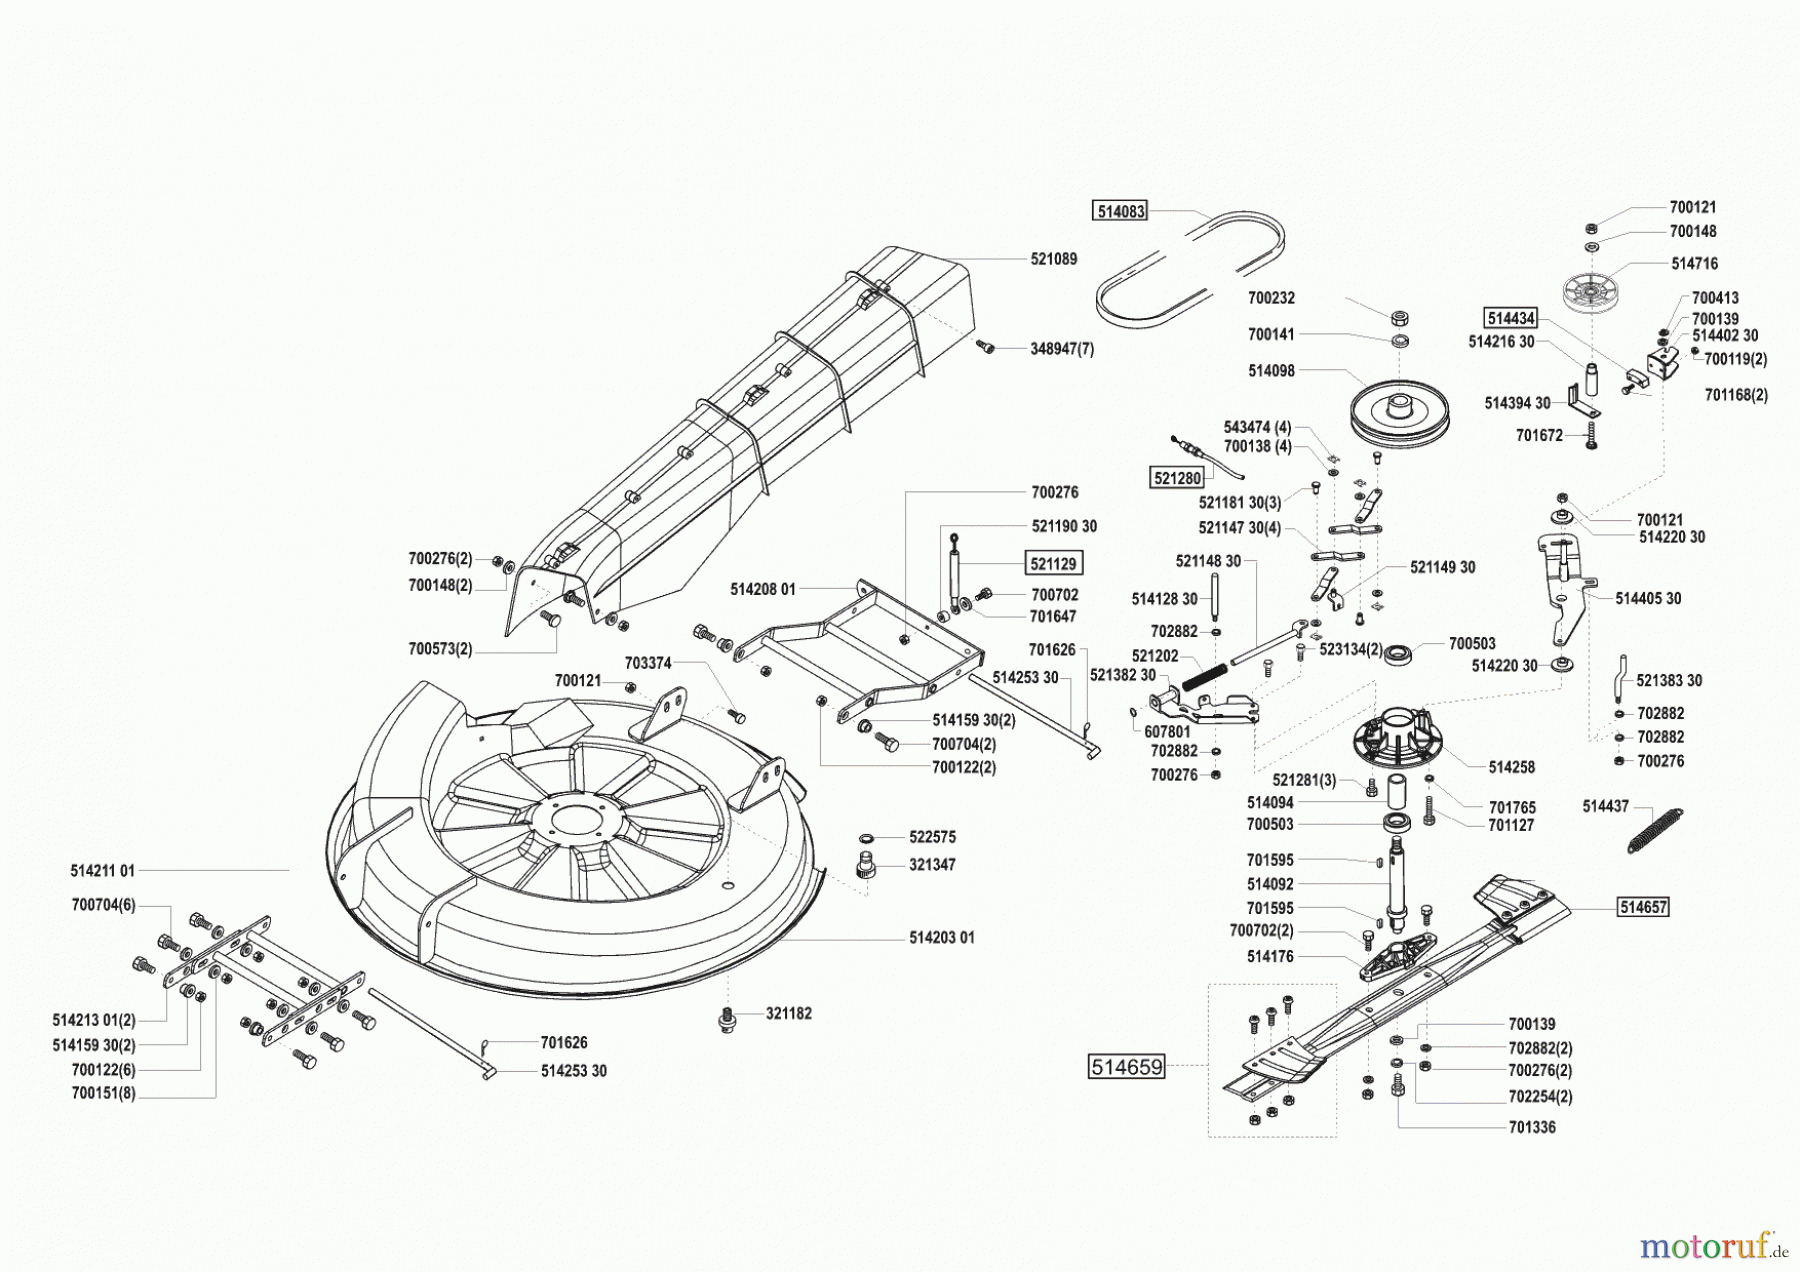  Ginge Gartentechnik Rasentraktor T 800 ab 02/2002 Seite 5